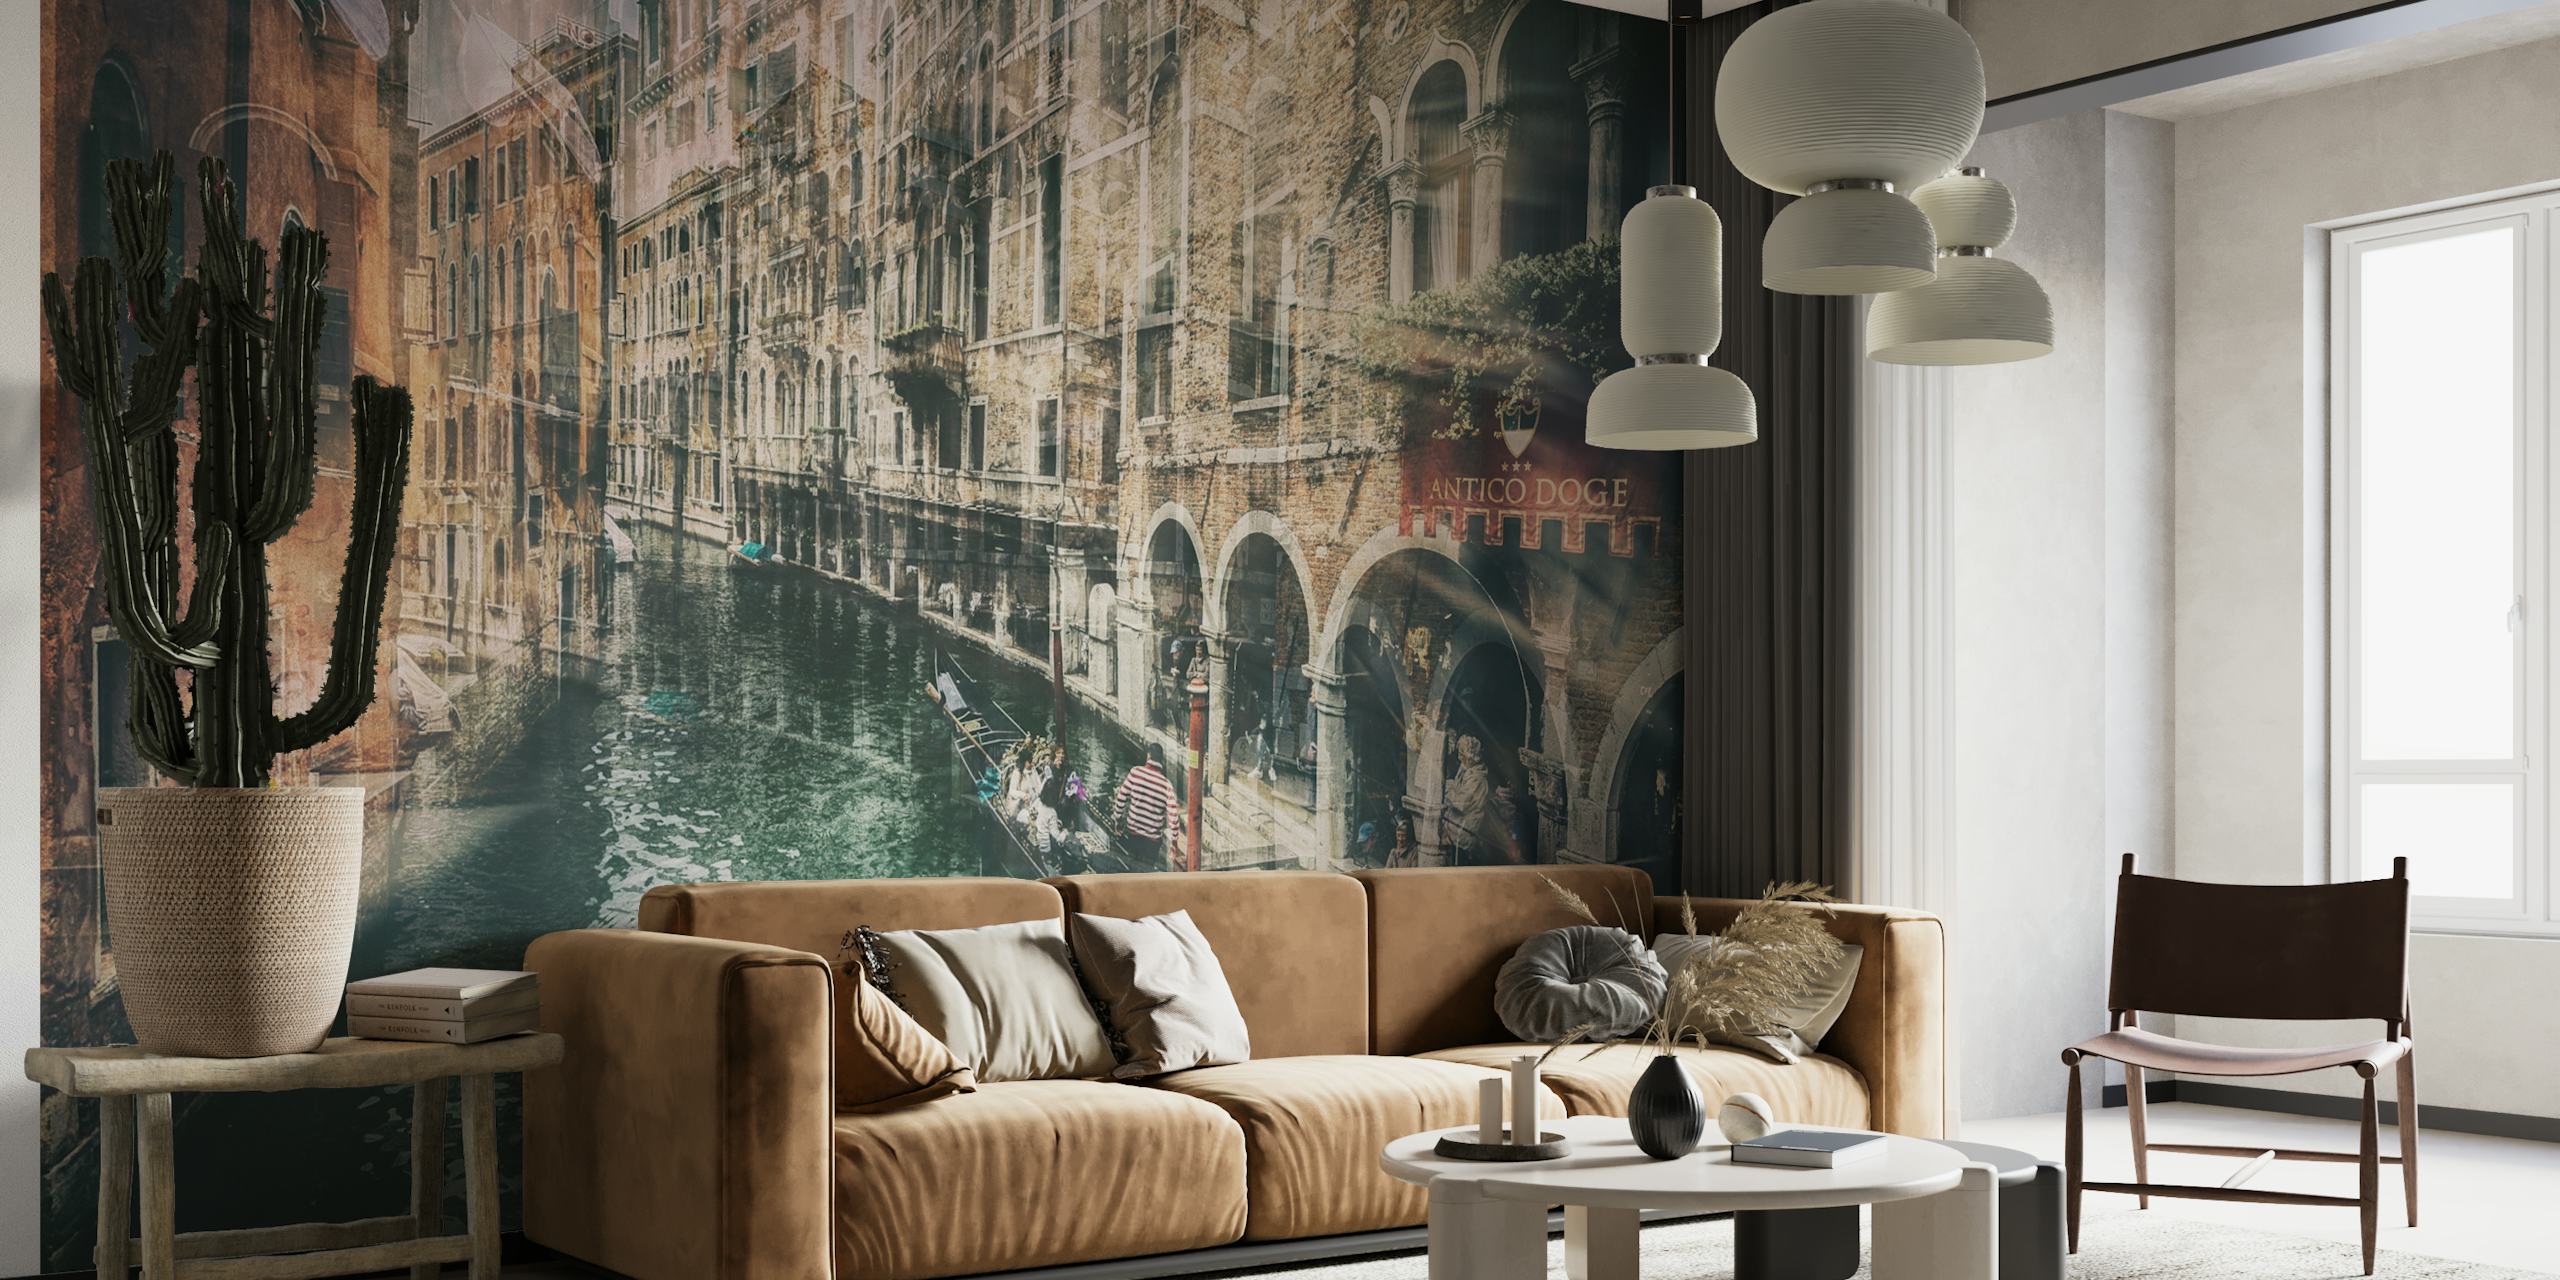 Zidna slika u starinskom stilu koja prikazuje venecijanski kanal s povijesnom arhitekturom